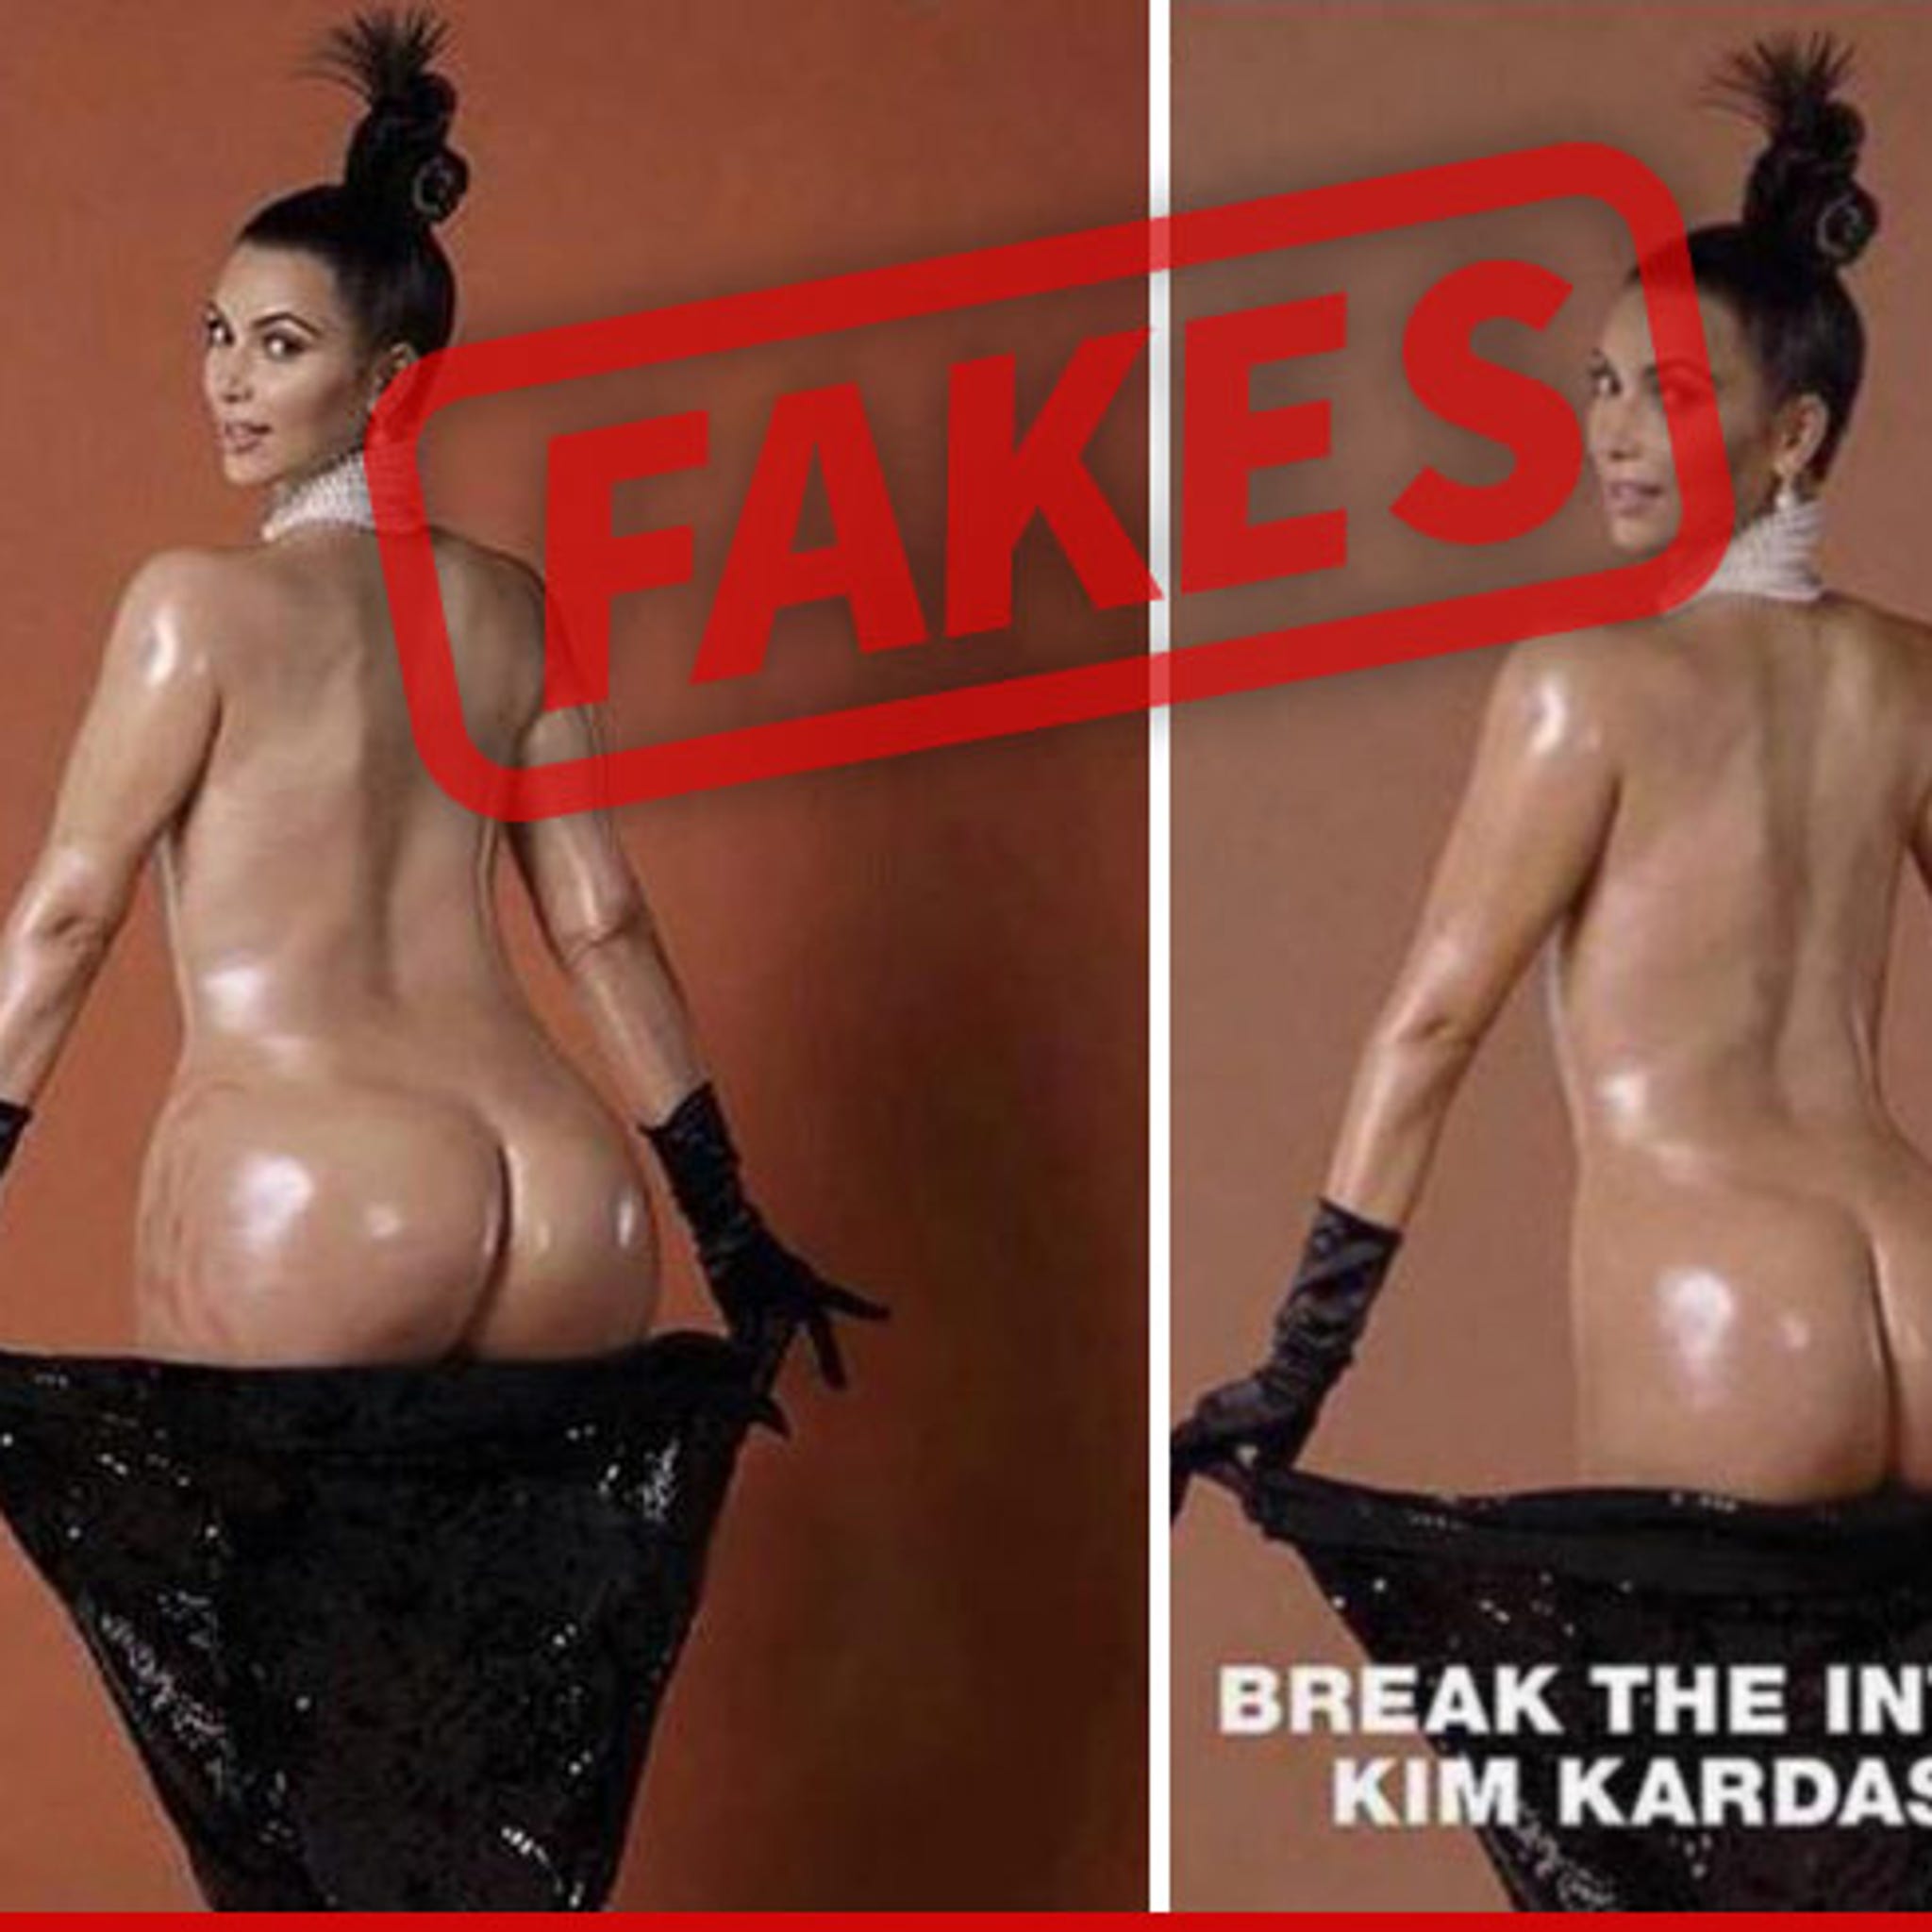 Kim Kardashian -- Untouched Ass Photos Are Fake!